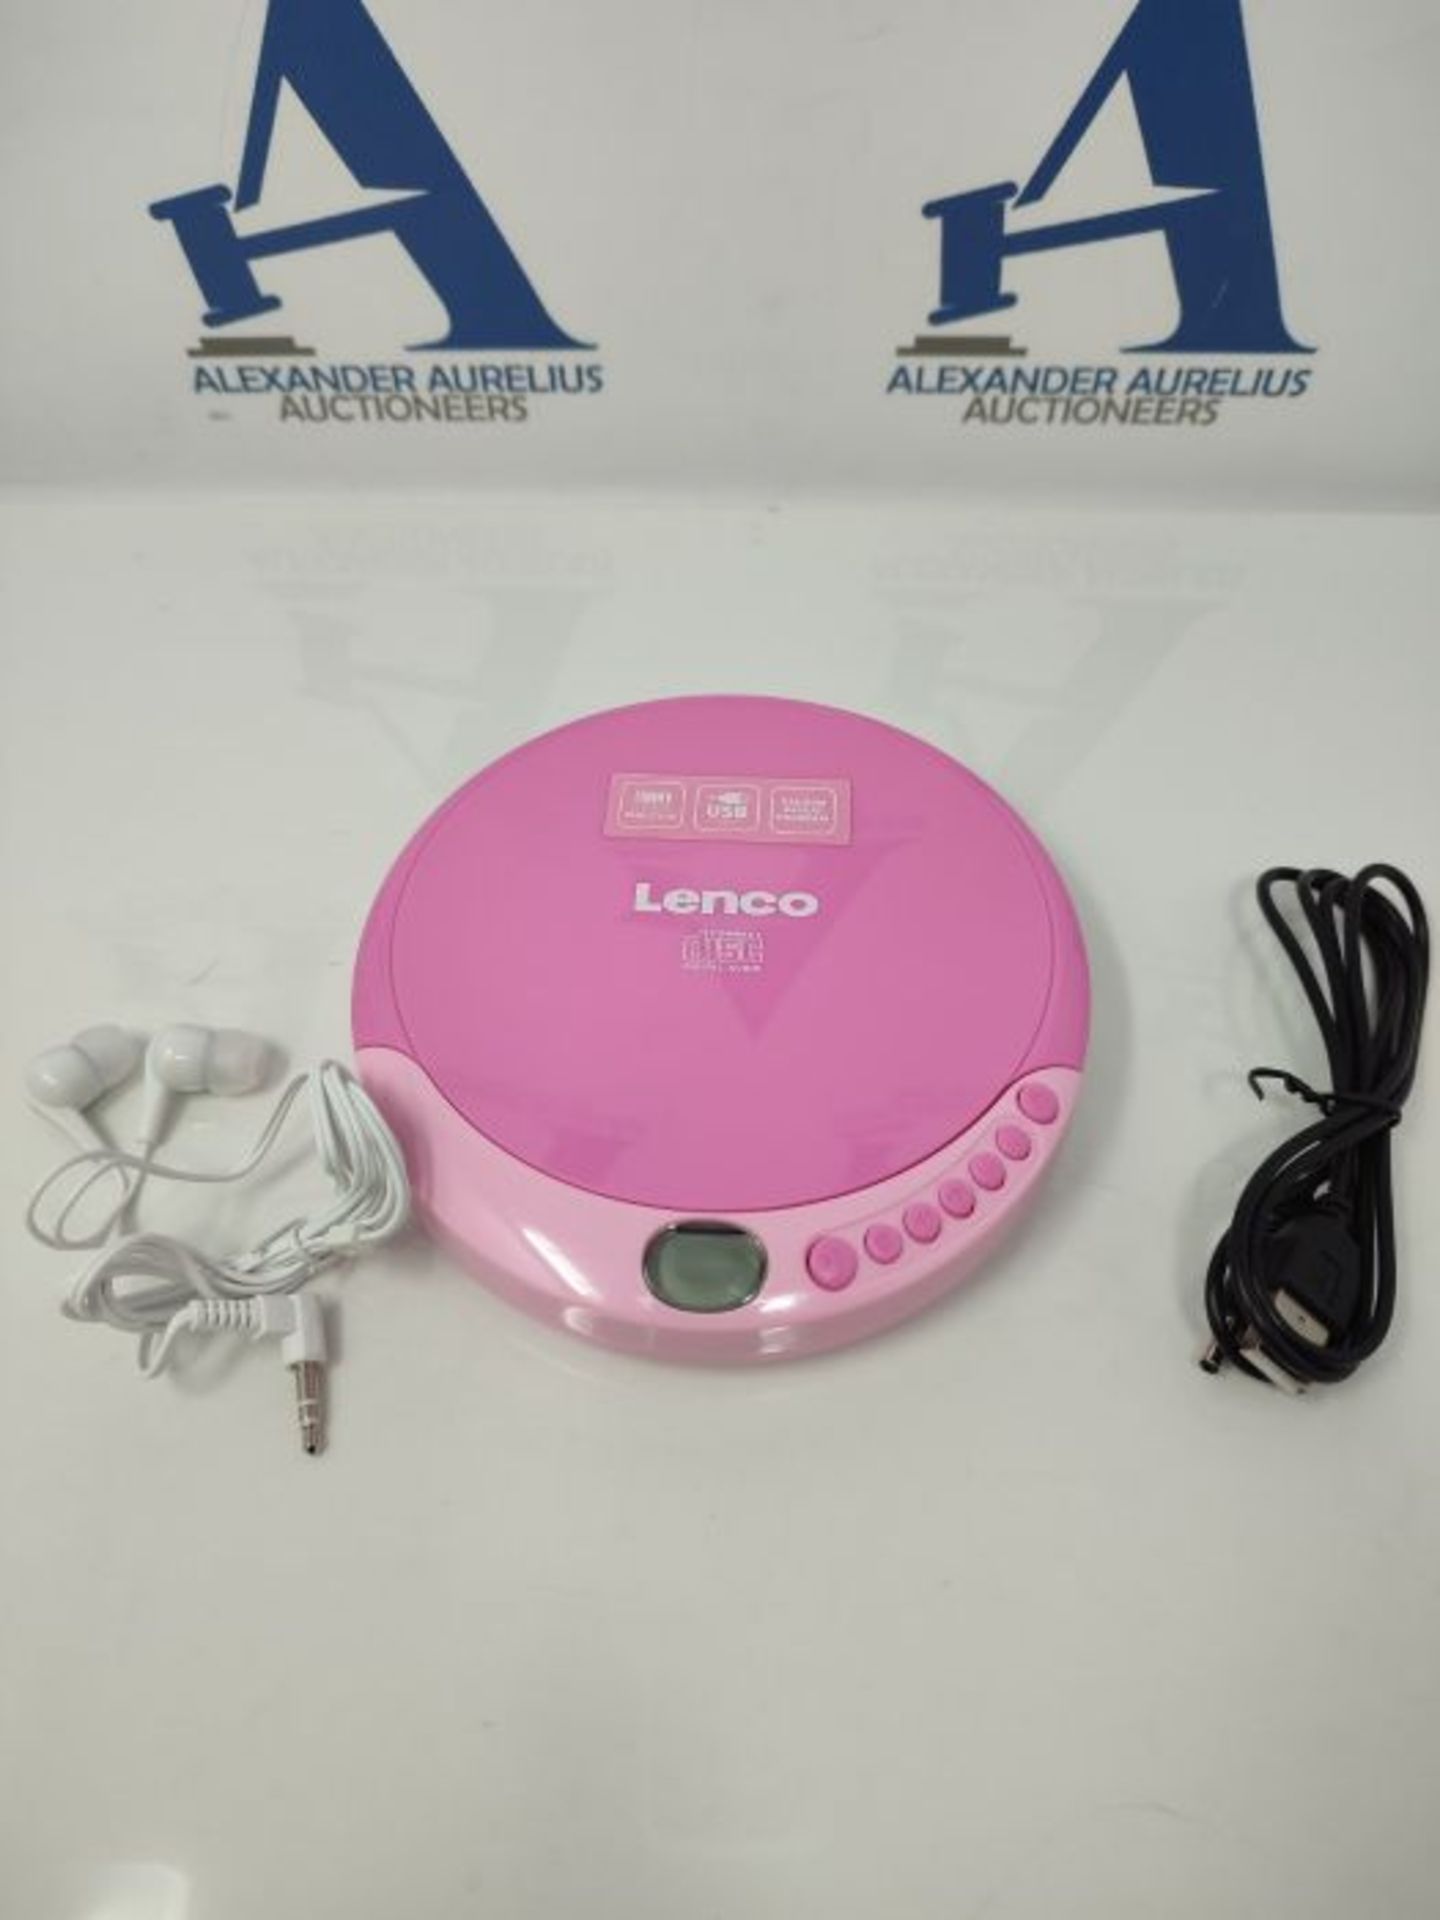 Lenco CD-011 - Portable CD Player Walkman - Diskman - CD Walkman - with Headphones and - Image 3 of 3